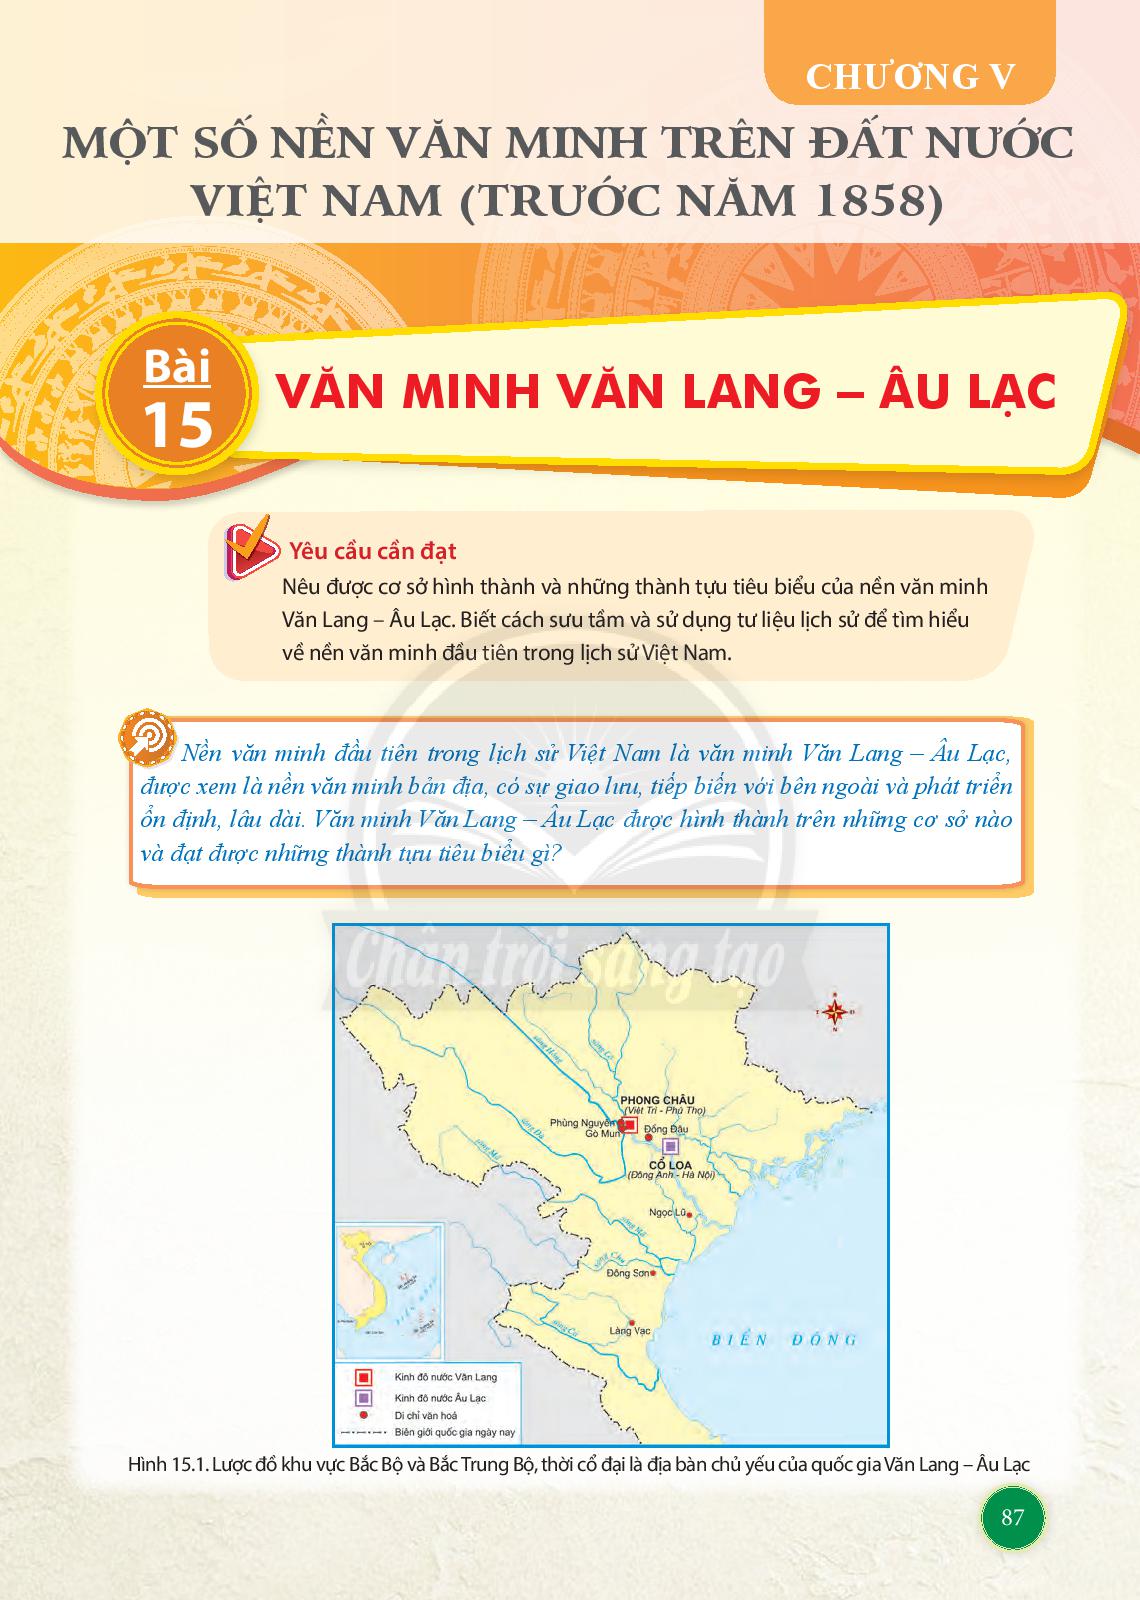 Một số nền văn minh trên đất nước Việt Nam (trước năm 1858) | Pupi ...